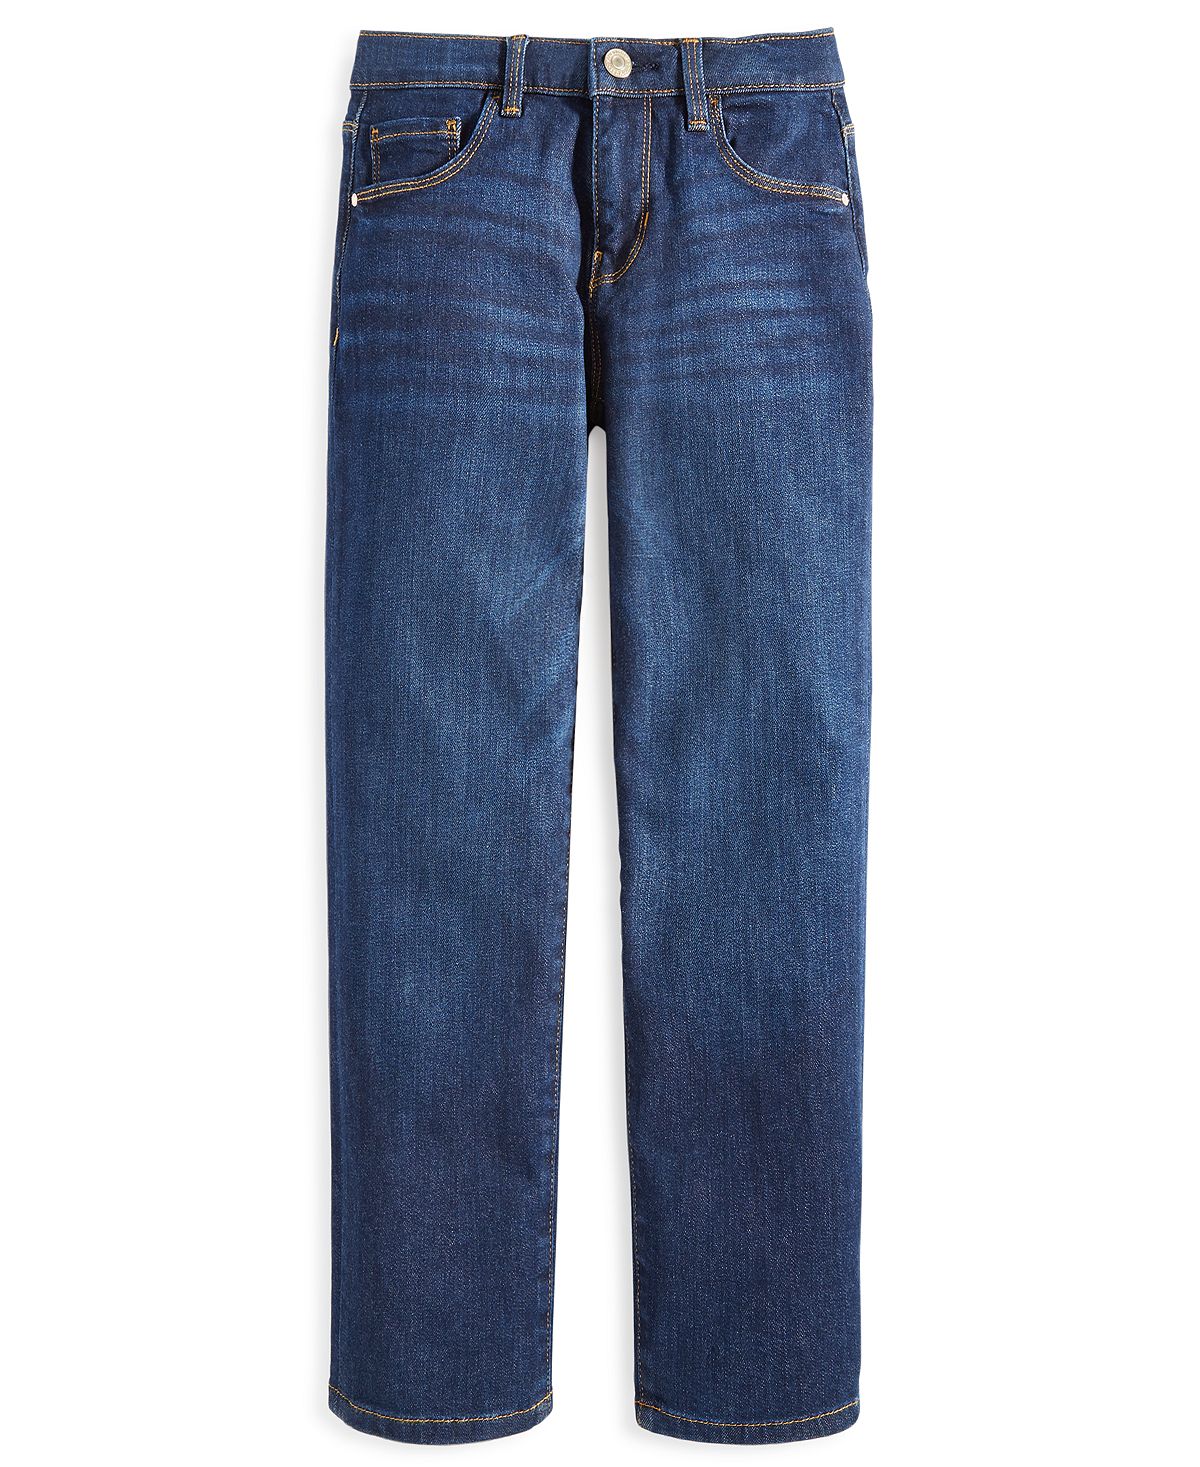 Джинсовые прямые джинсы с 5 карманами для больших девочек GUESS цена и фото